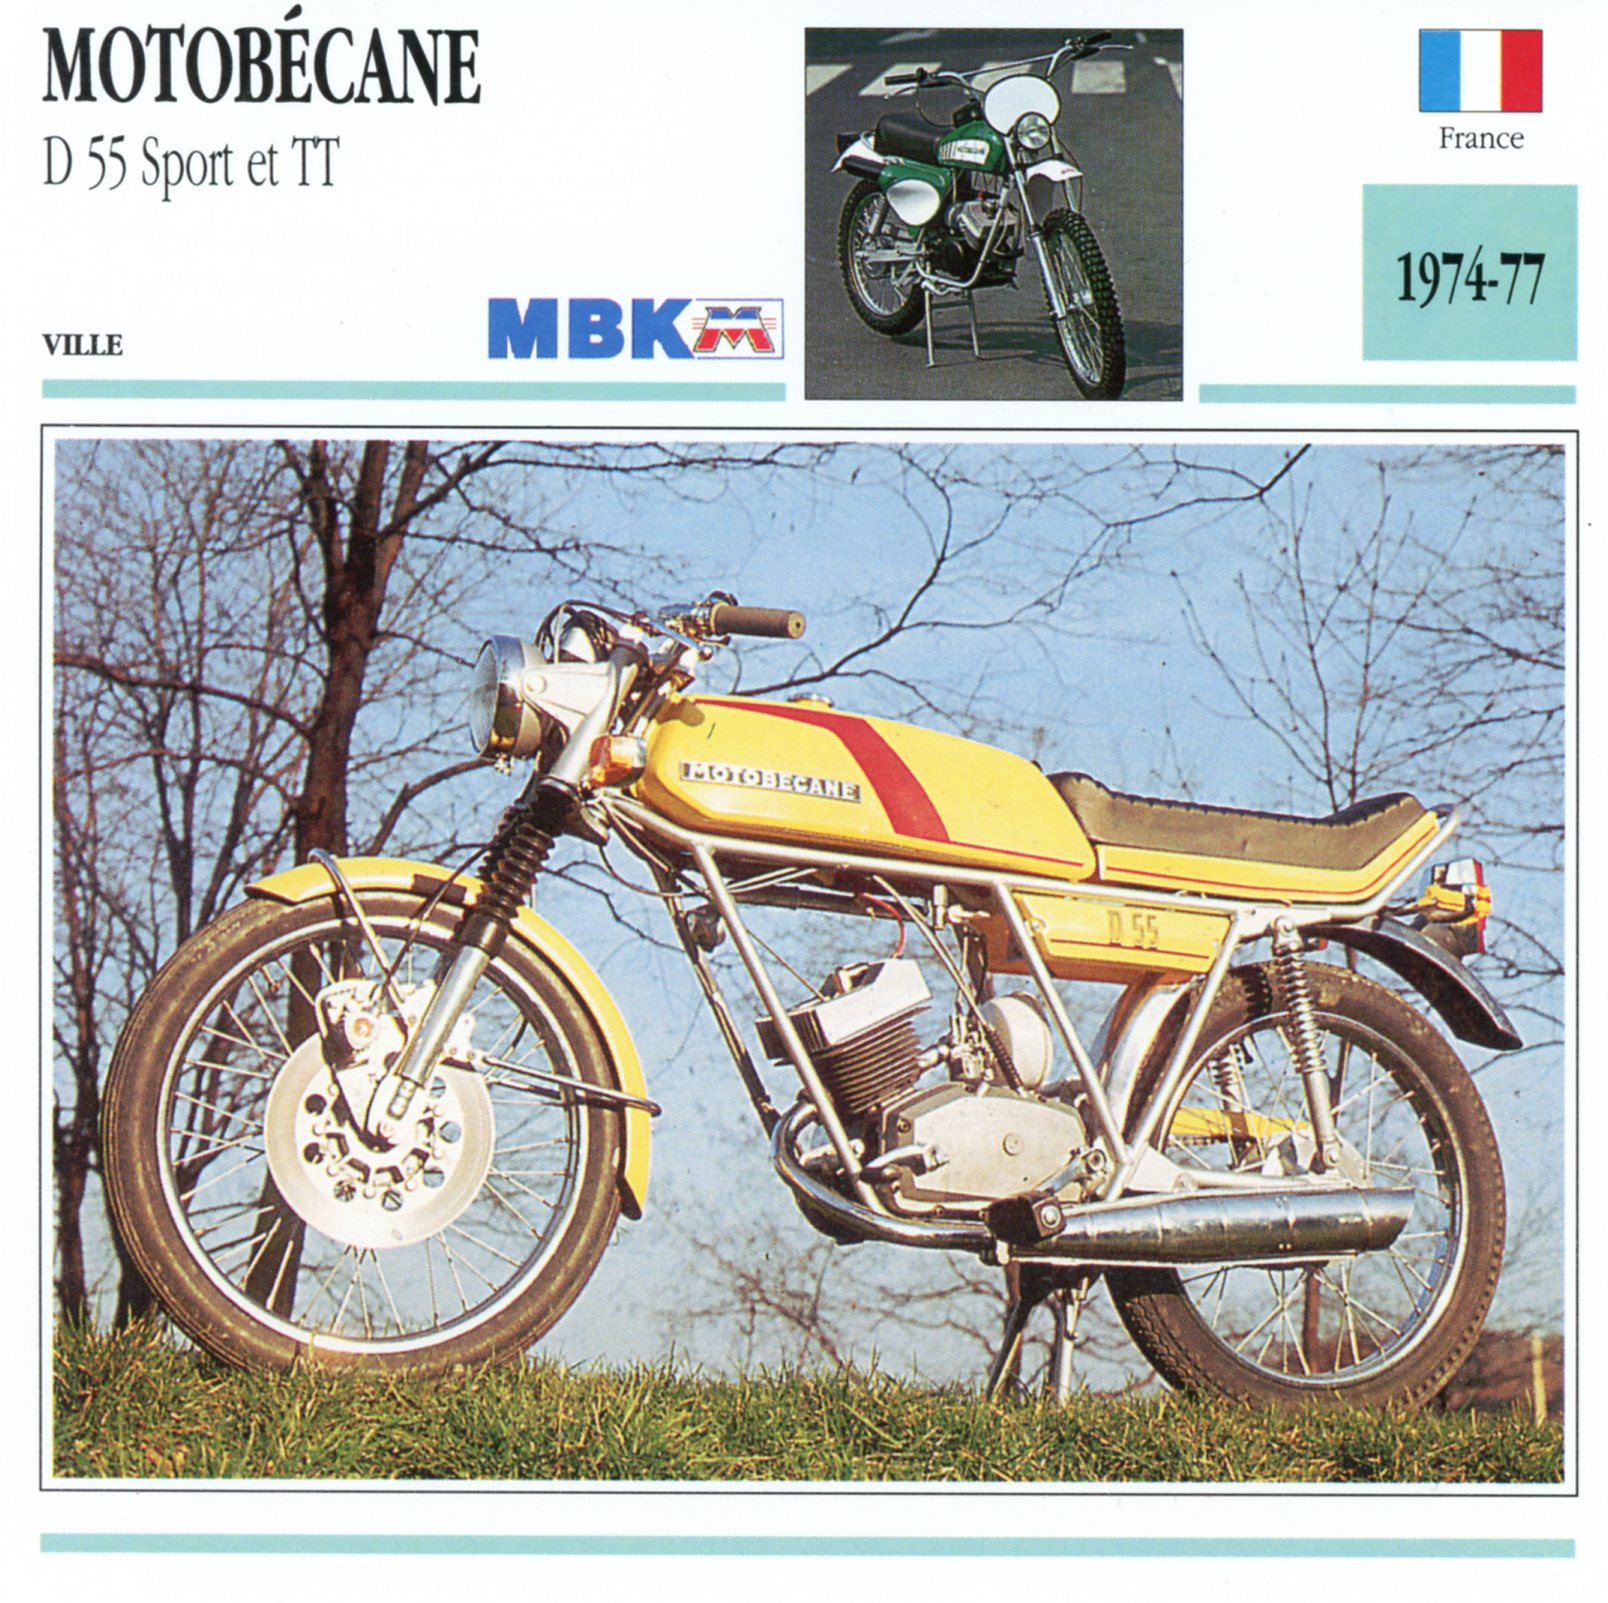 MOTOBÉCANE-D55-SPORT-TT-1974-1977-CARTE-CARD-FICHE-MOTO-LEMASTERBROCKERS